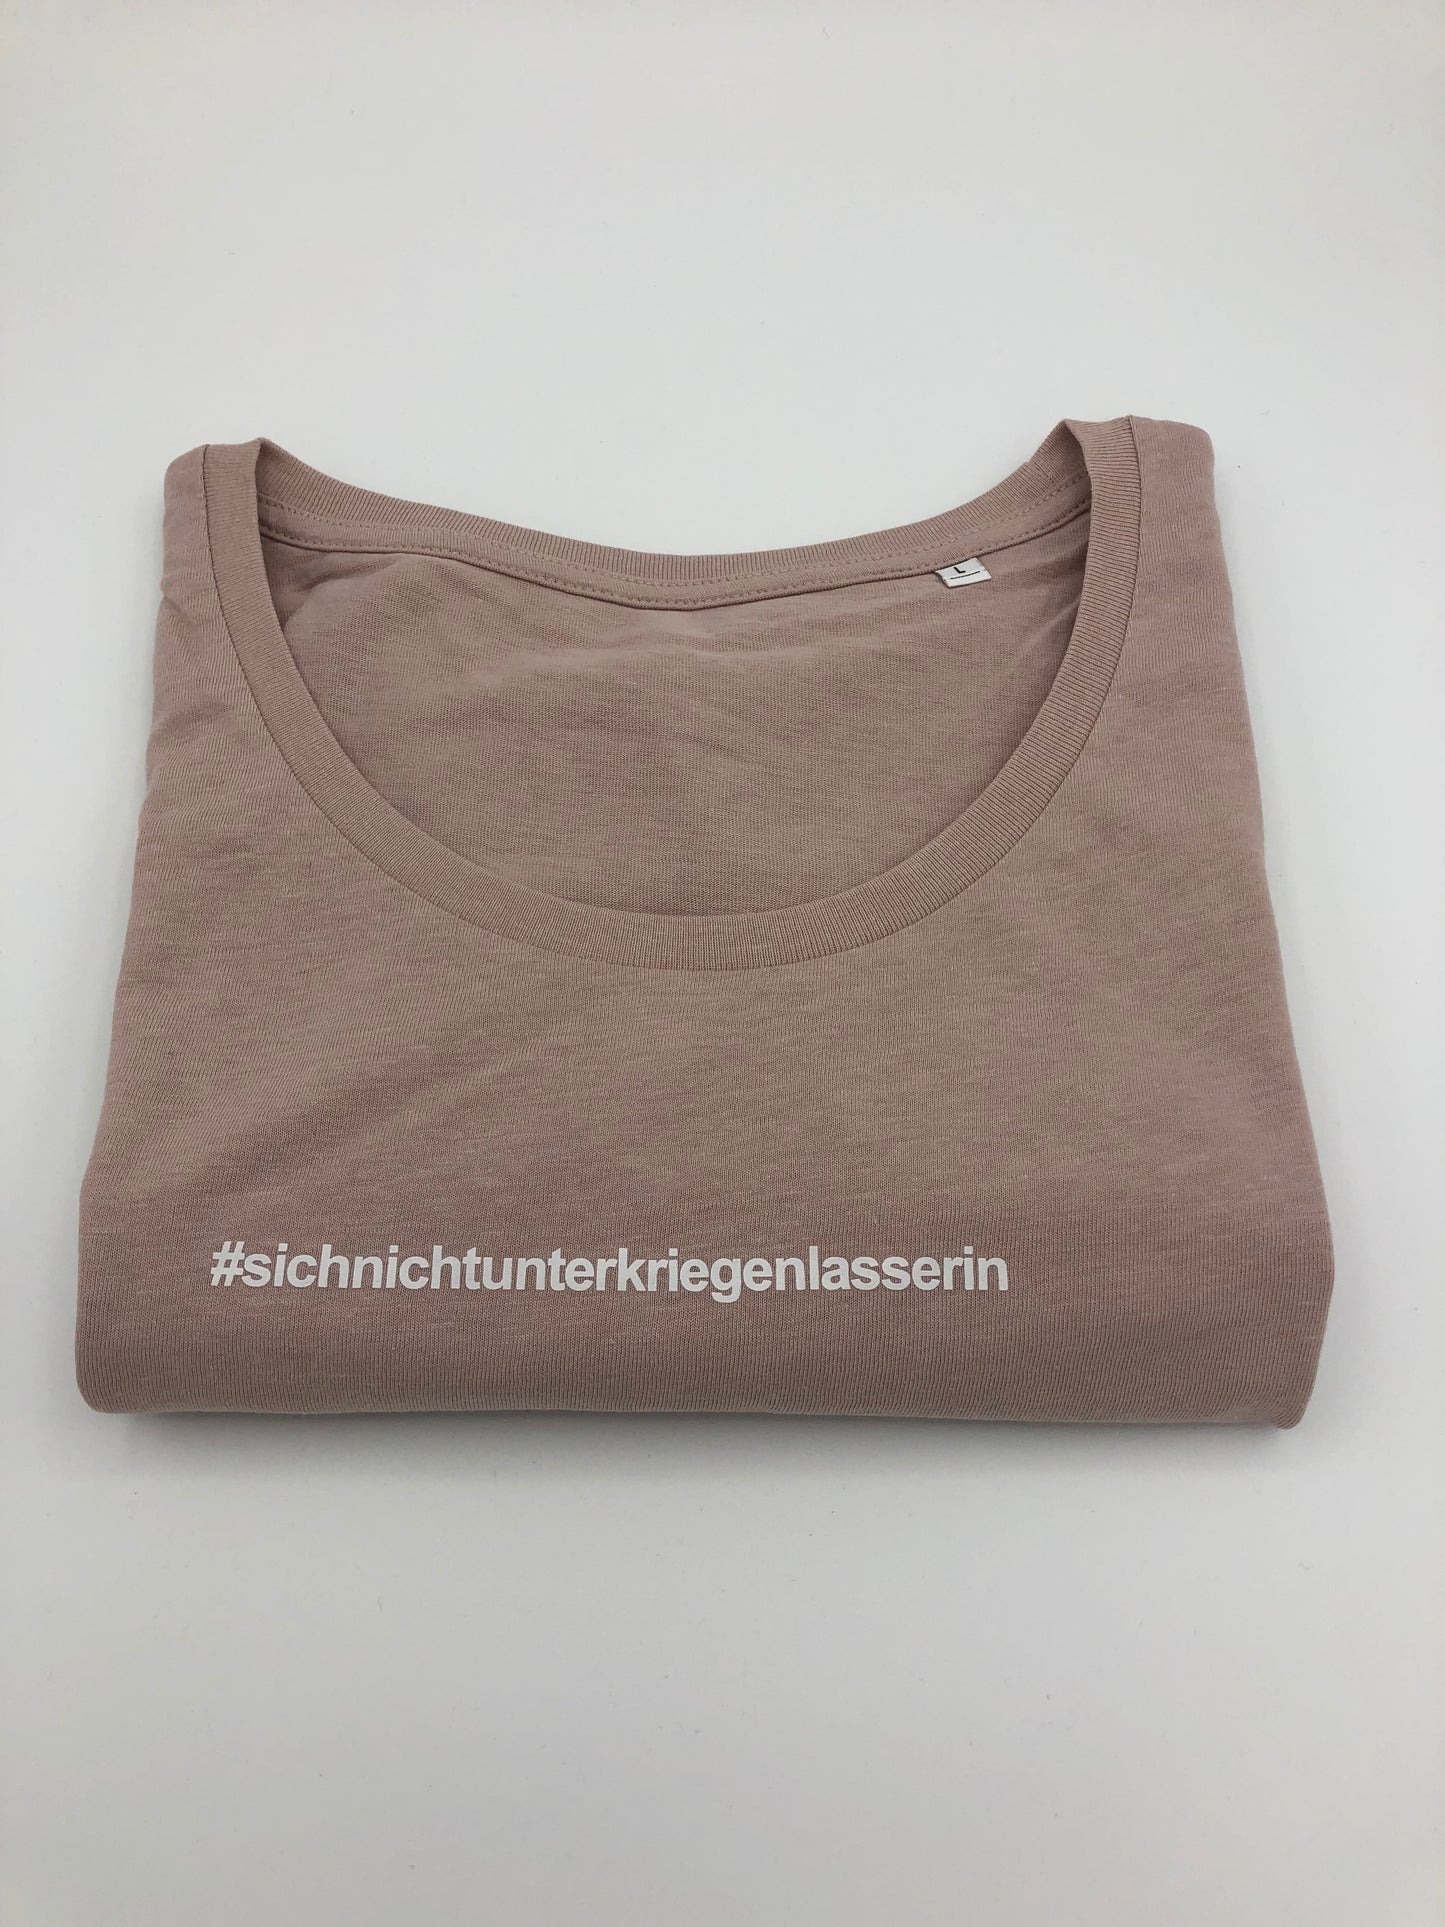 T-Shirt - "SichNichtUnterkriegenLasserin" - Damen - millenial khaki/millenial pink